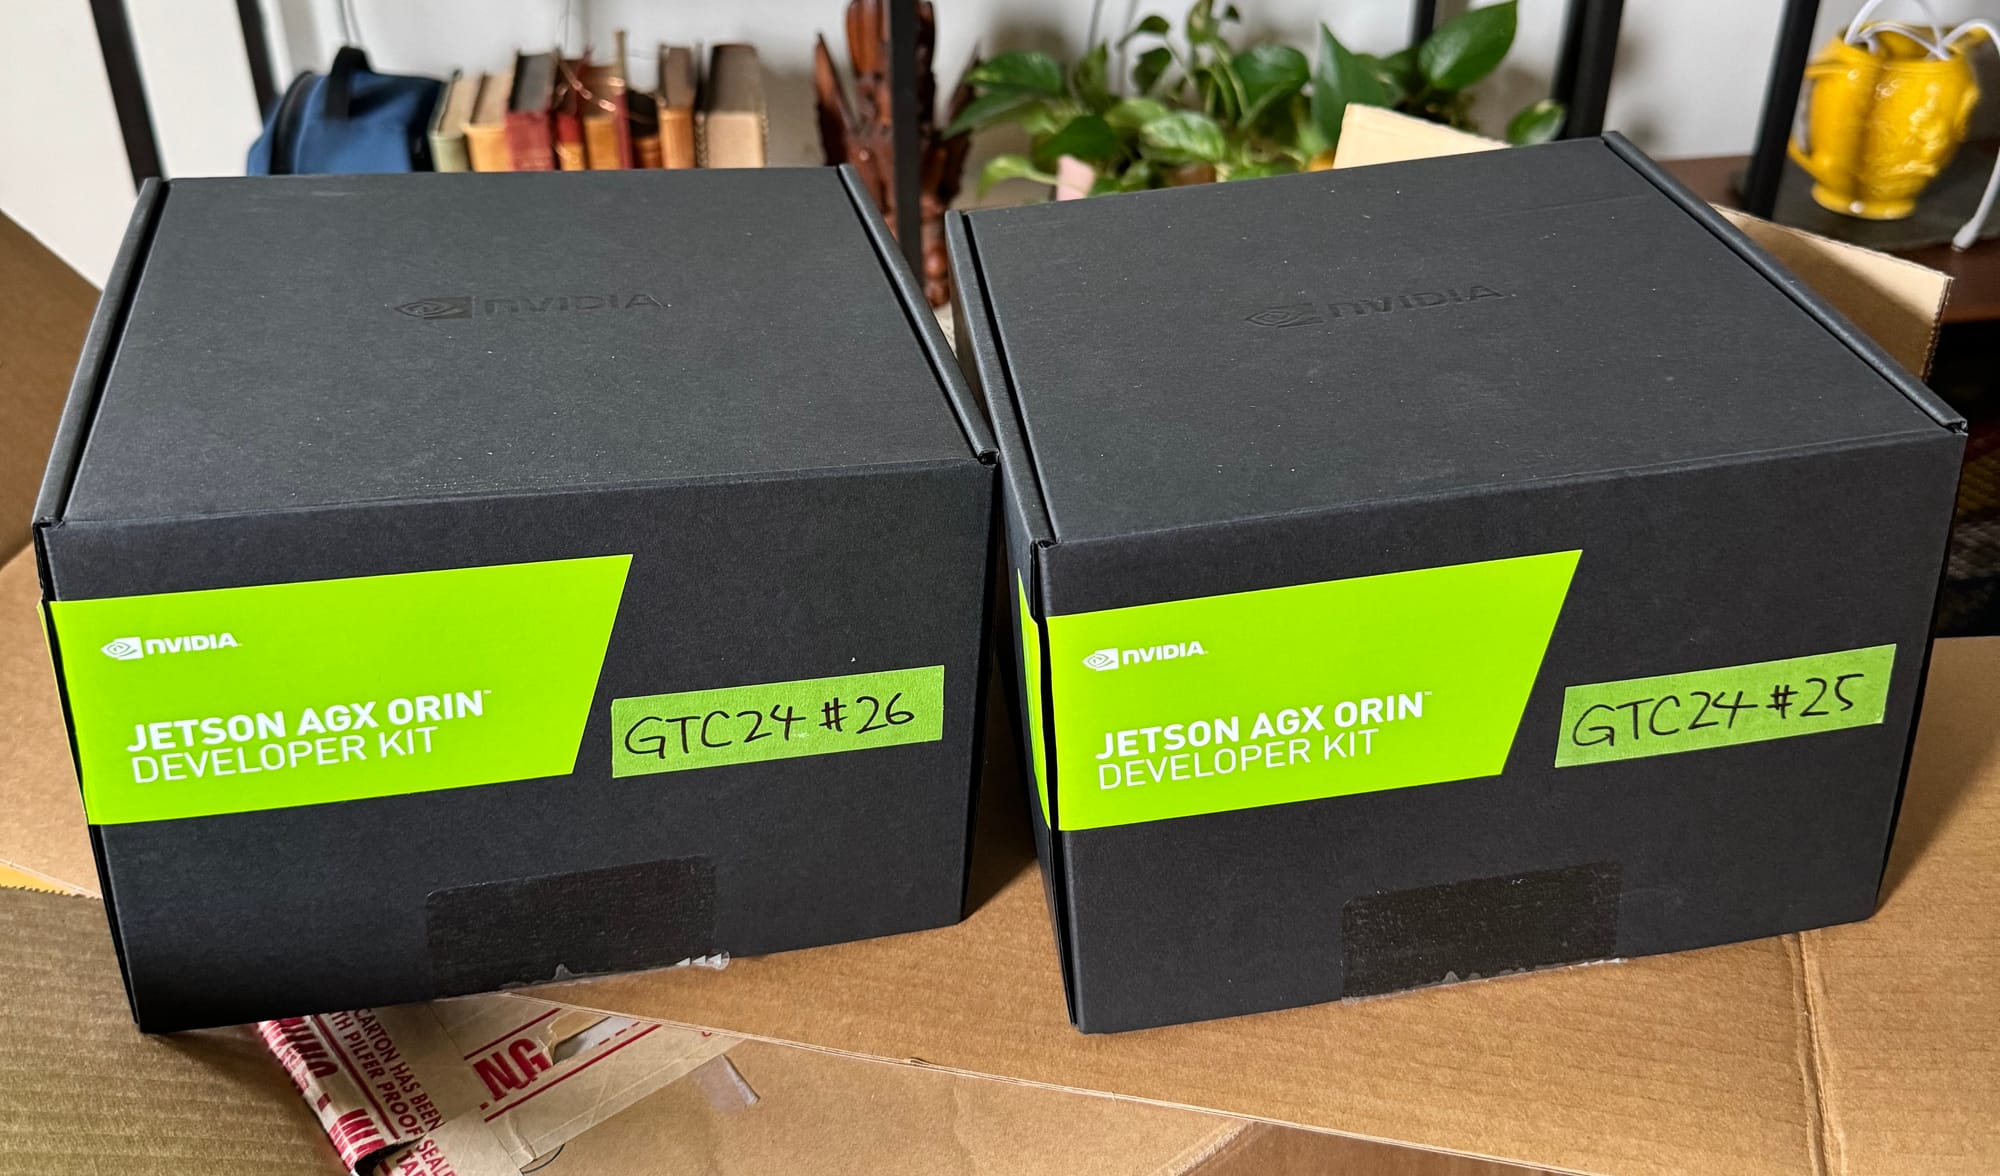 Photo of two Jetson AGX Orin developer kits.